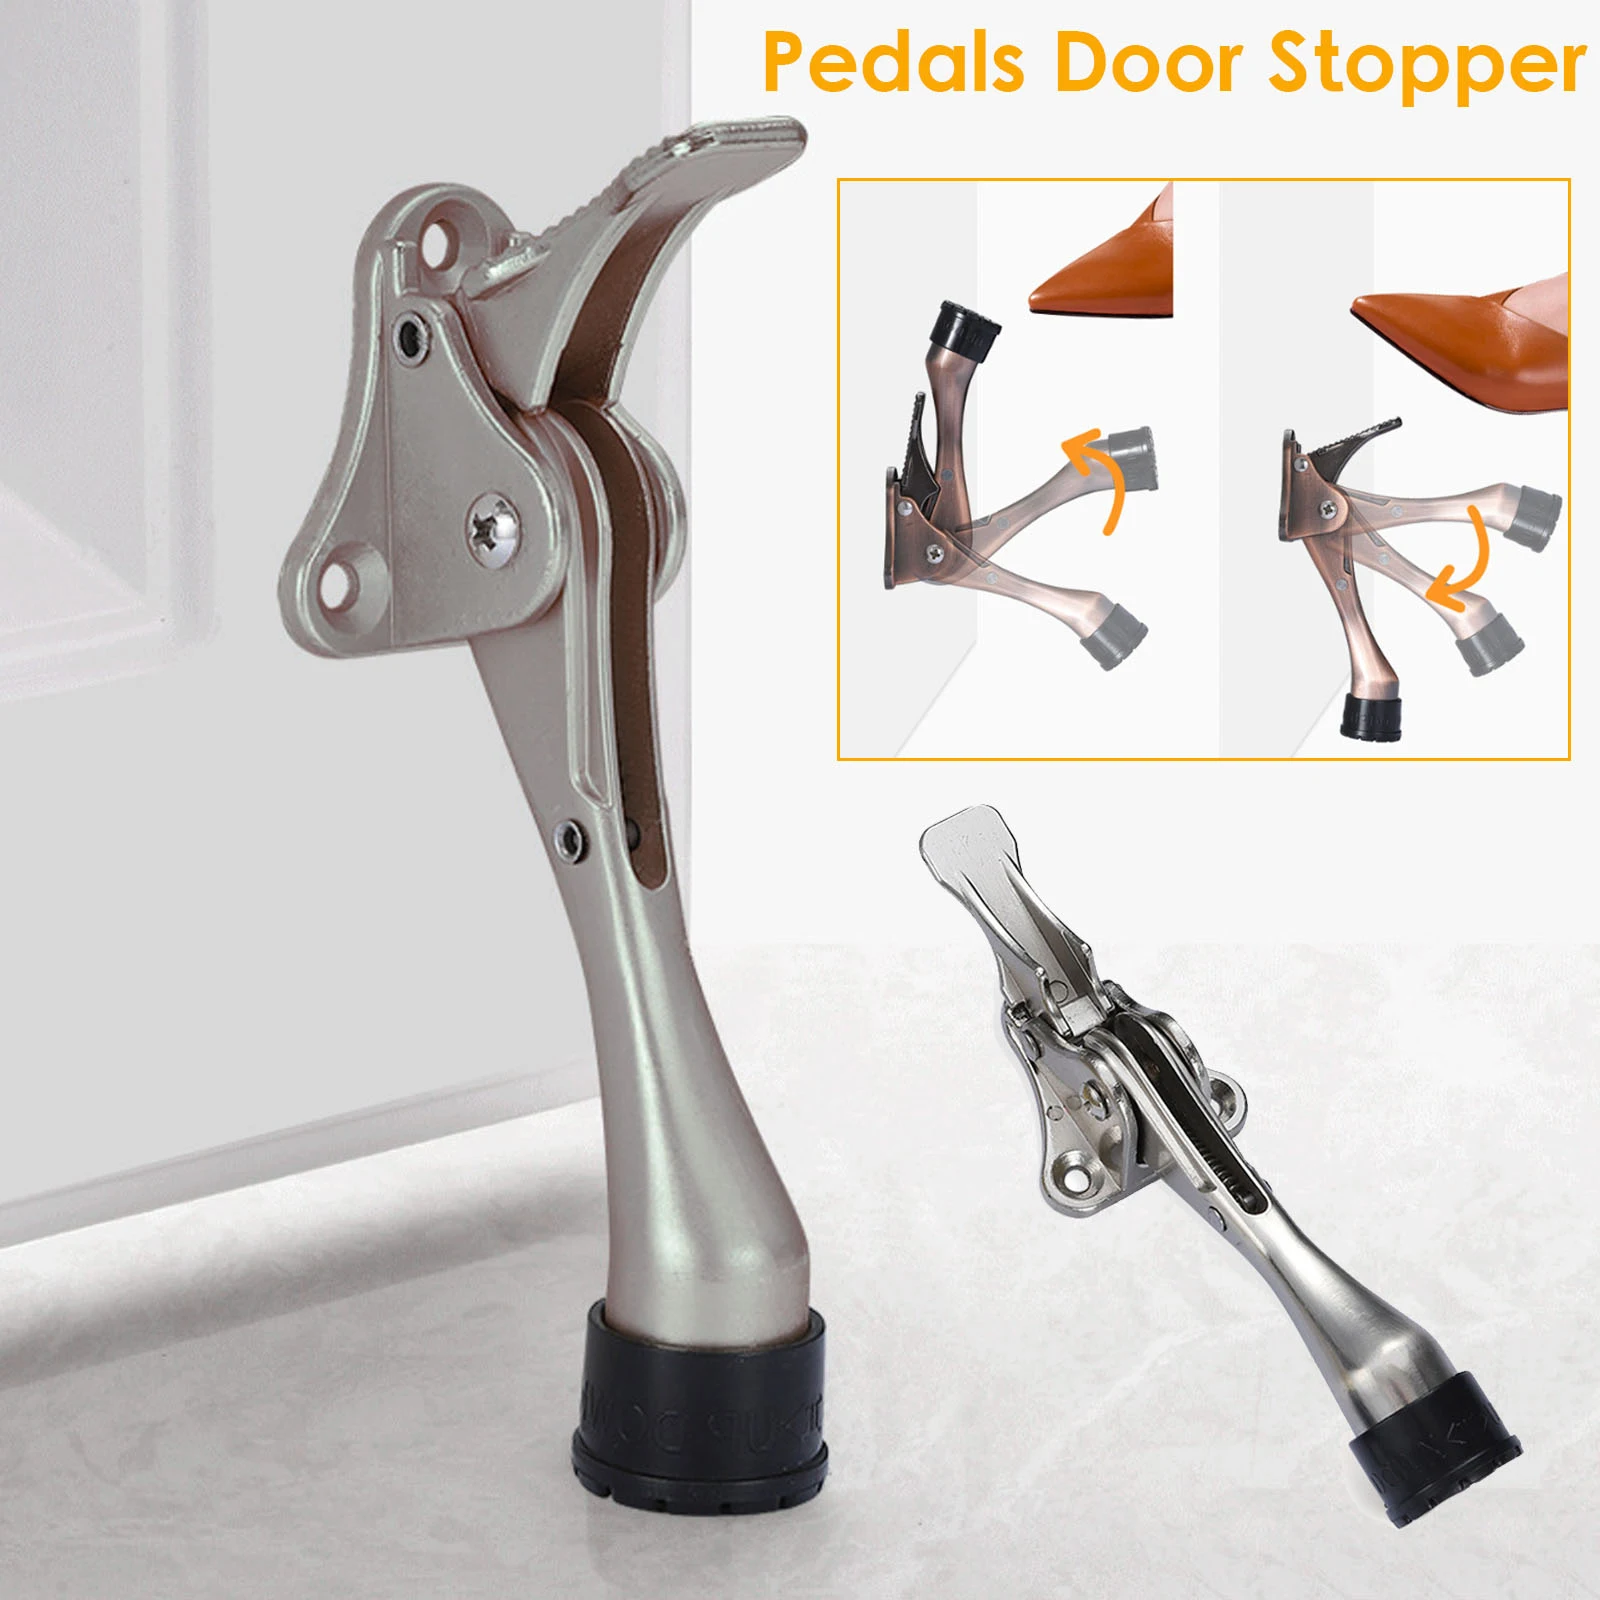 

Adjustable Pedals Door Stopper Heavy Duty Mute Zinc Alloy Door Stops With Non-Slip Rubber Tip Hidden Wall Protector